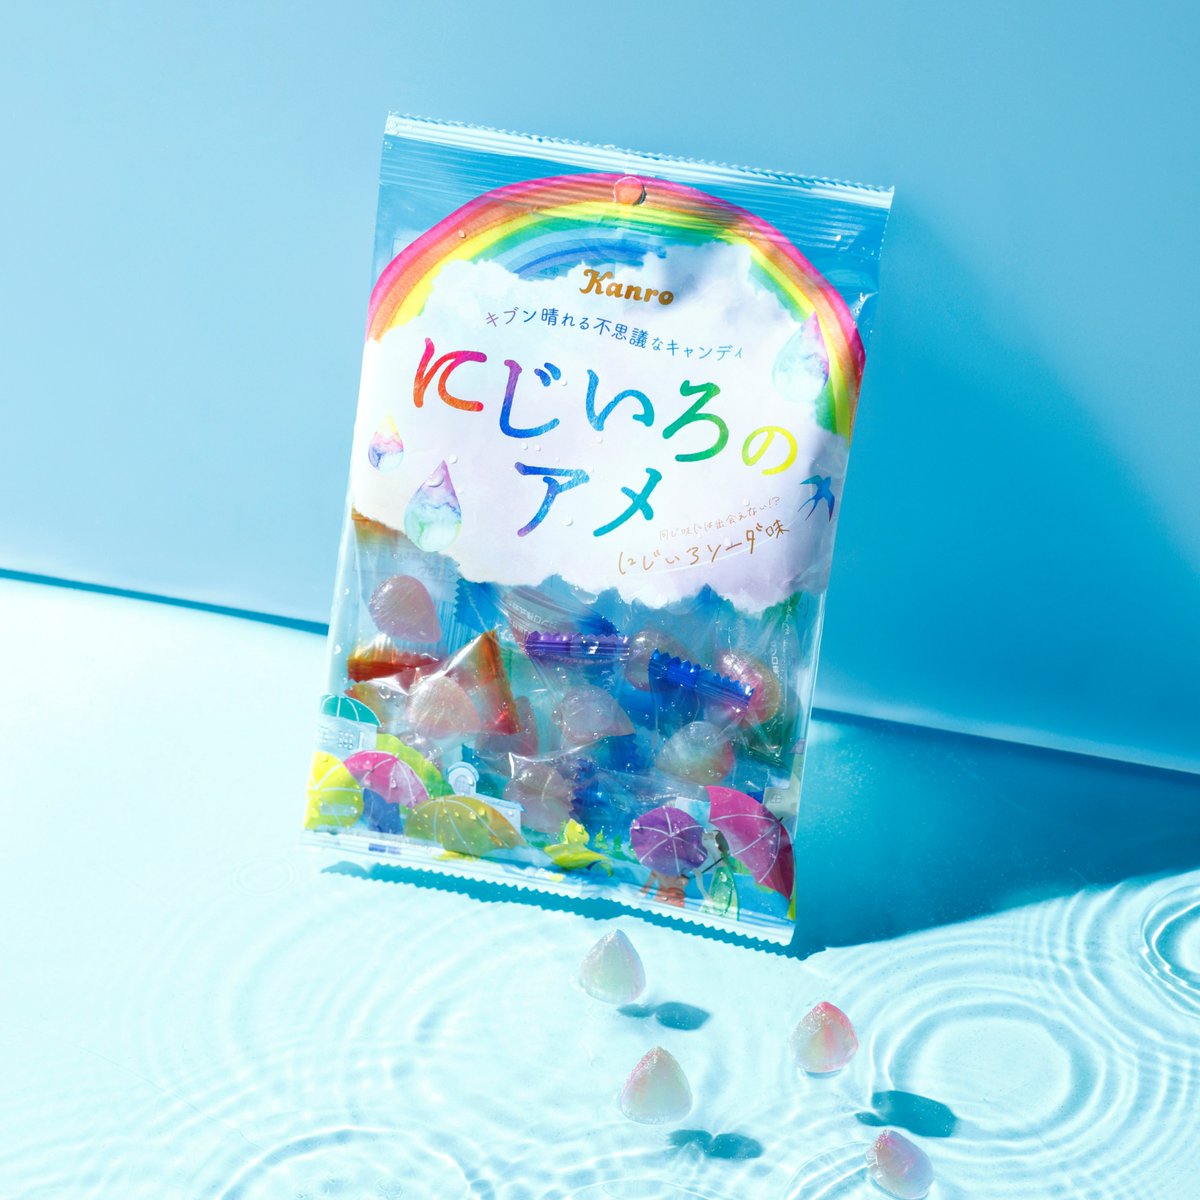 「にじいろのアメ」“虹色の雨粒型”キャンディ、同じ味には出会えない!?にじいろソーダ味  